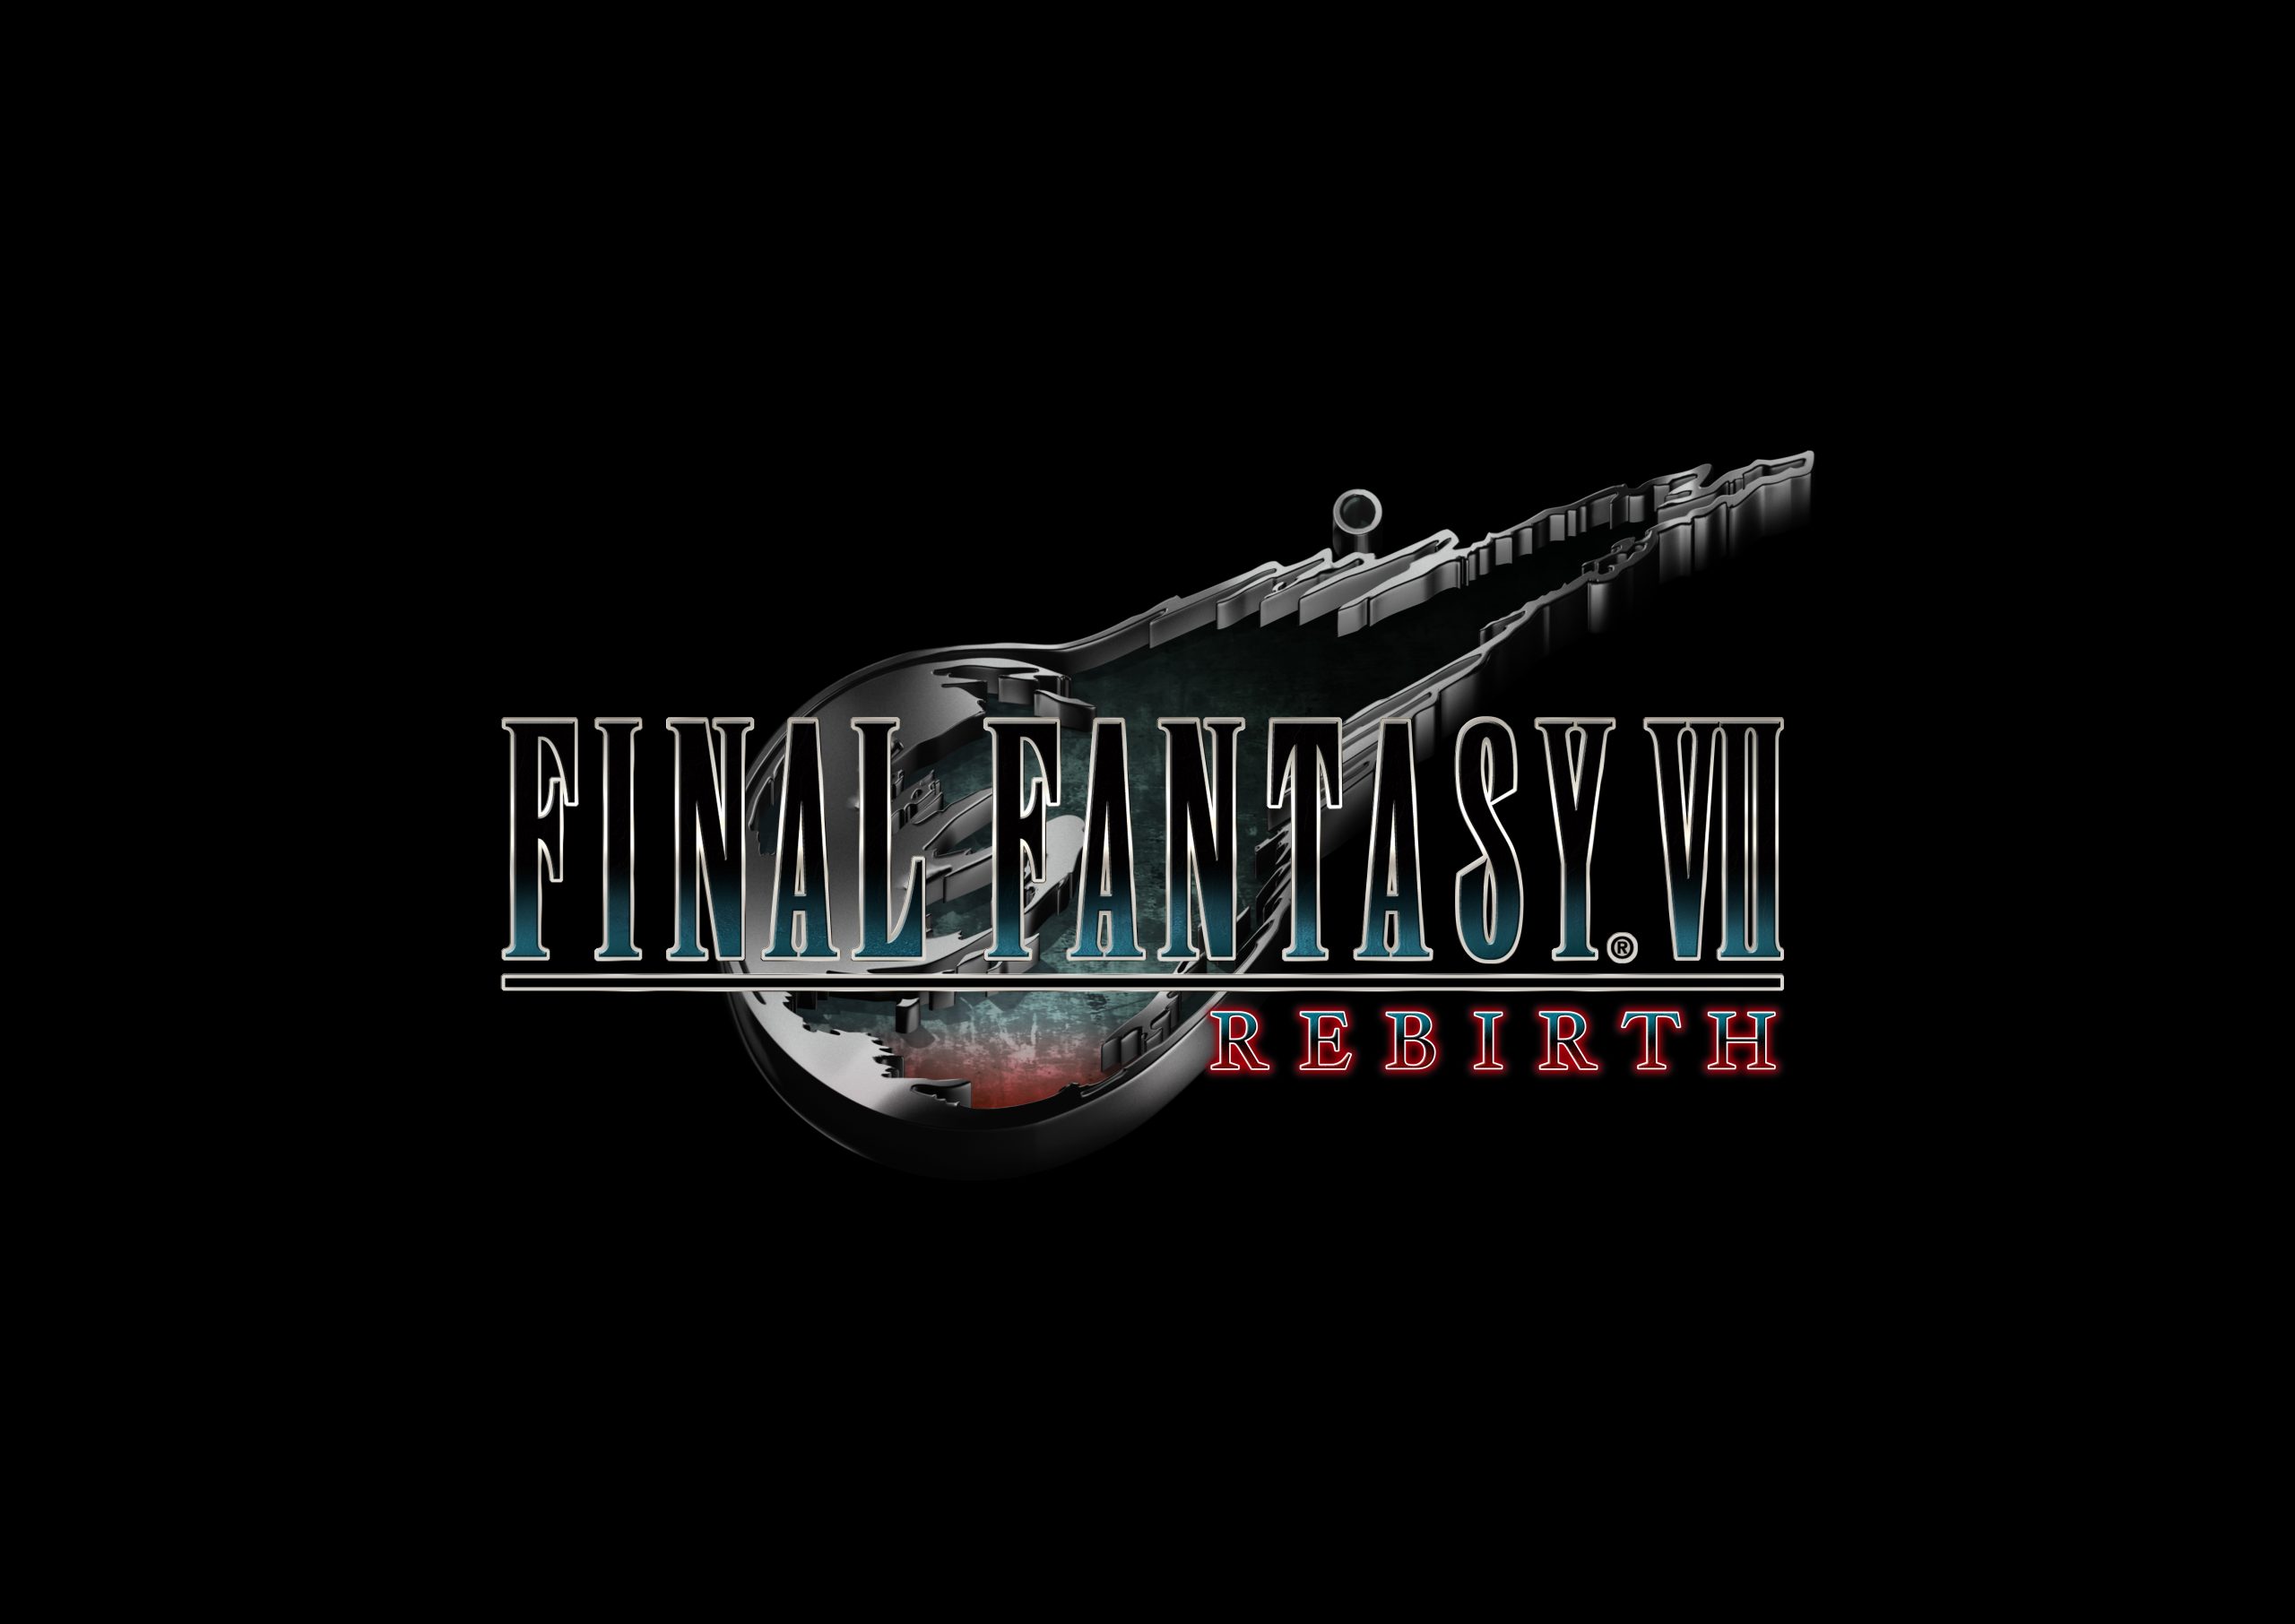 Annunciato Final Fantasy VII REBIRTH, seconda parte del progetto Remake!